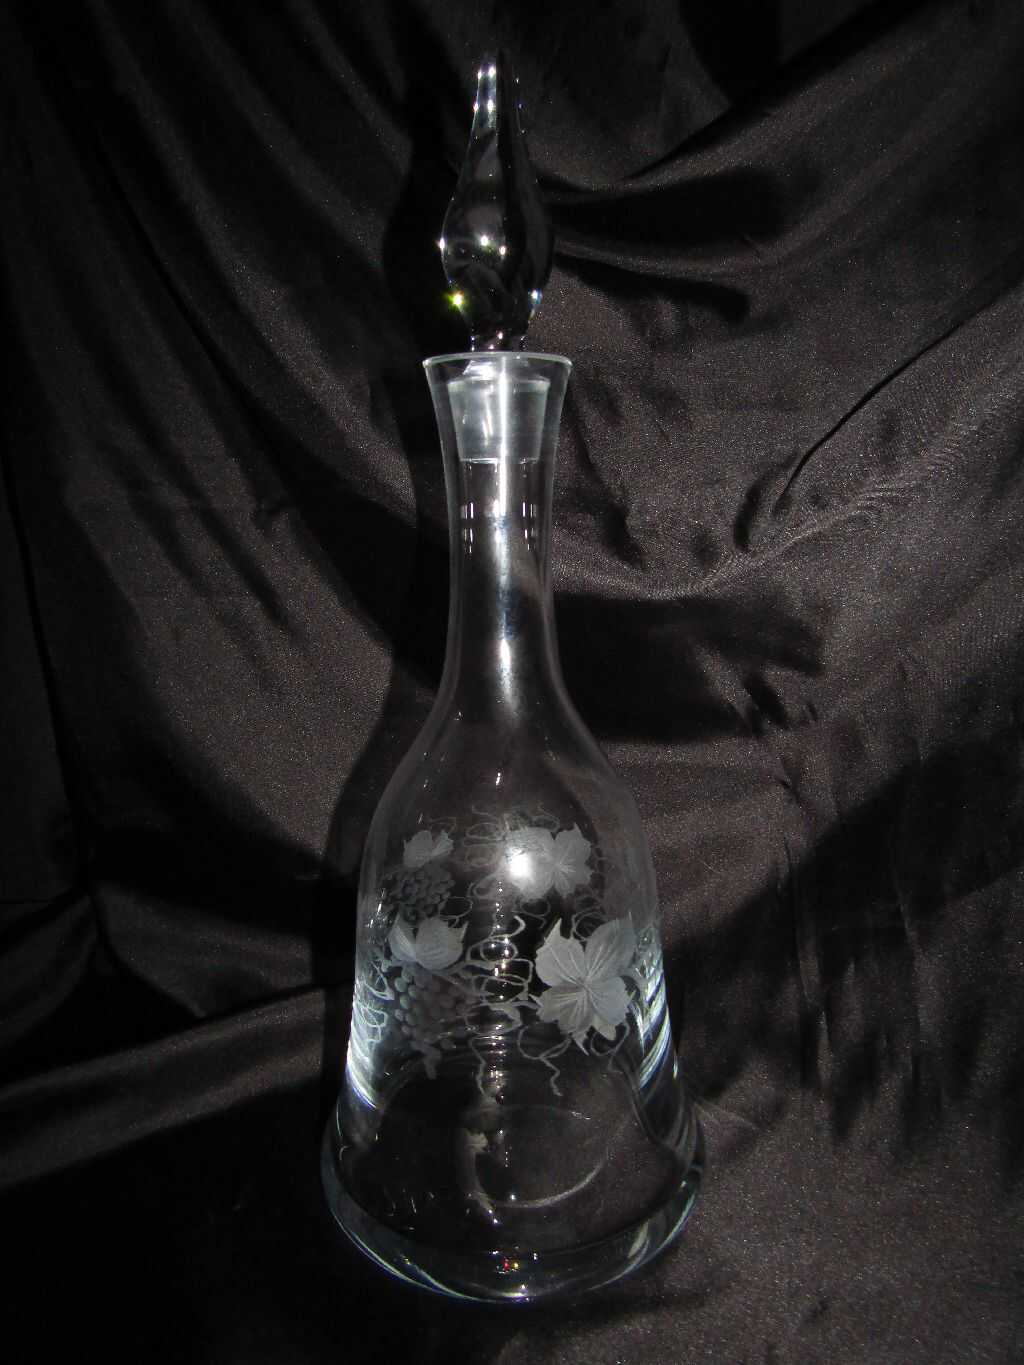 LsG-Crystal Láhev broušená/ rytá dekor Víno zabroušená zátka originál balení LA-297 1000 ml 1 Ks.